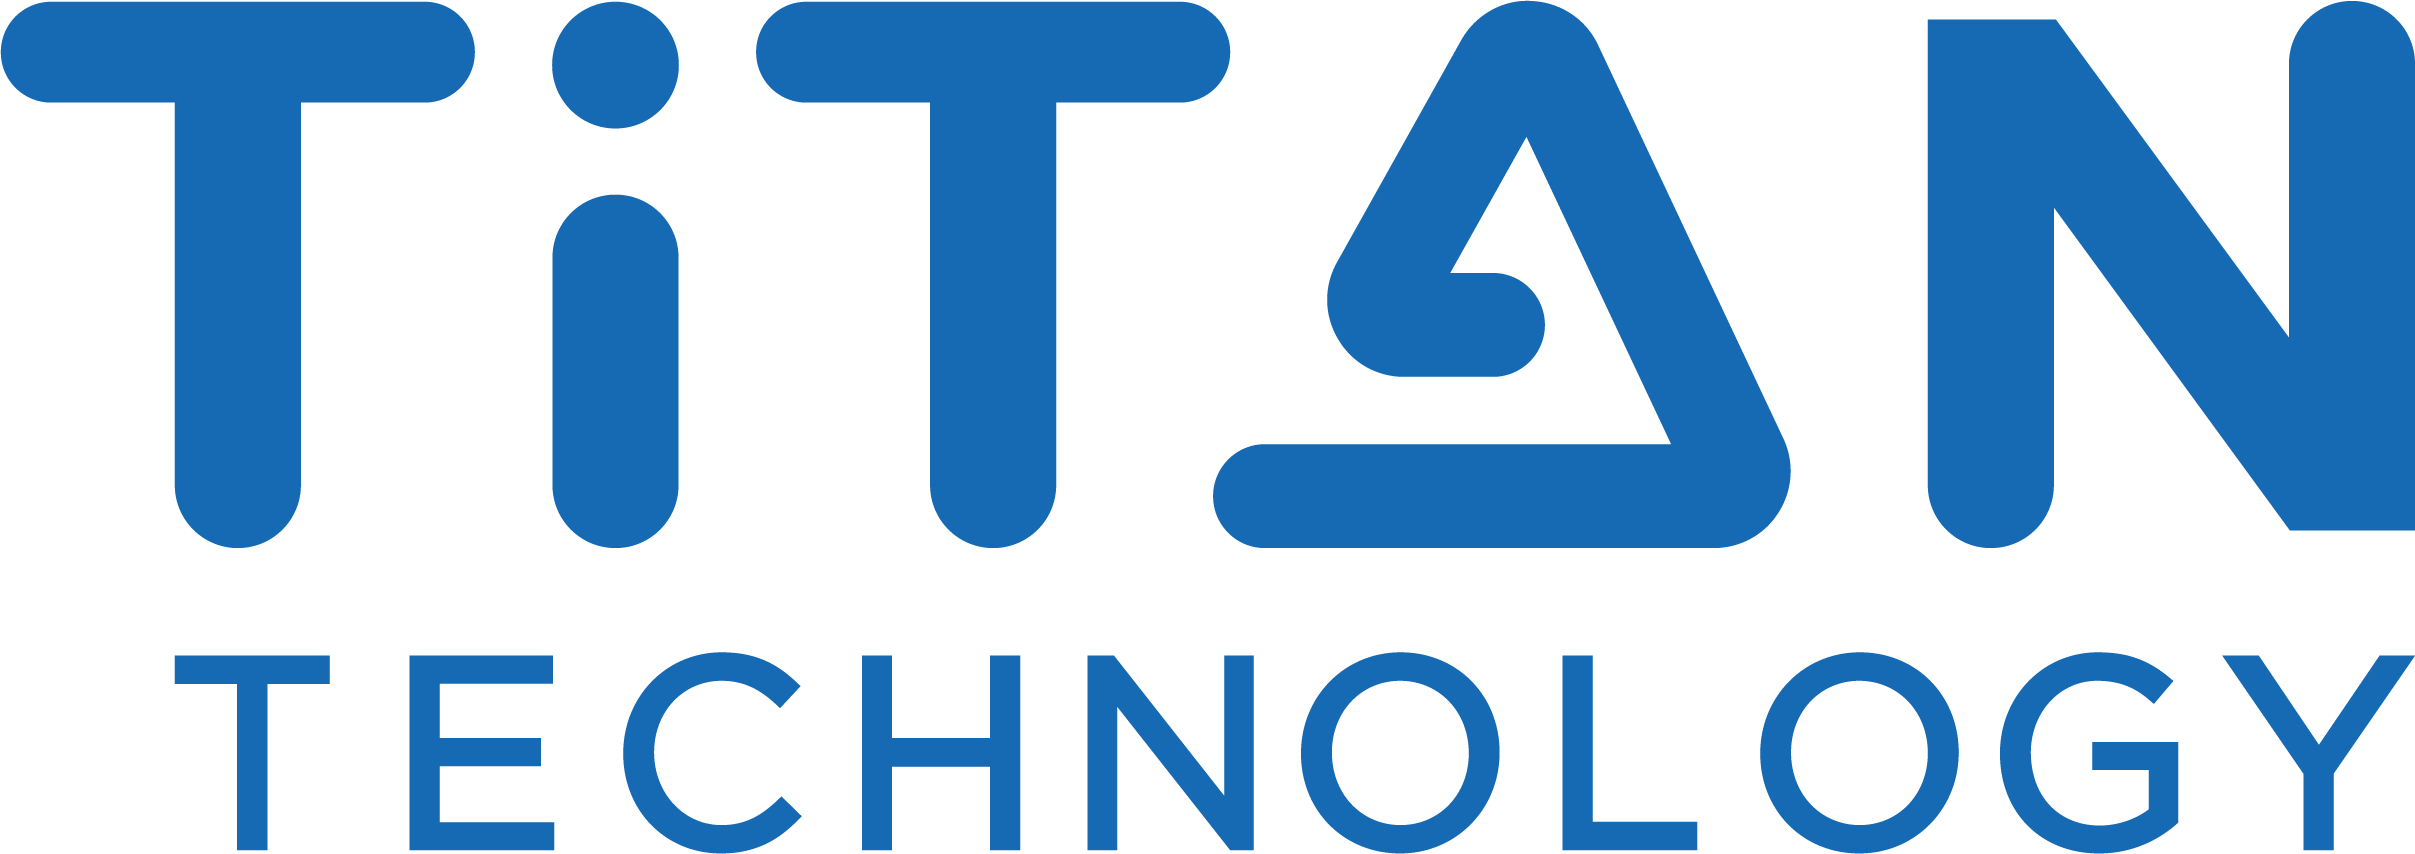 CÔNG TY CỔ PHẦN CÔNG NGHỆ TITAN (Titan Technology Corporation)